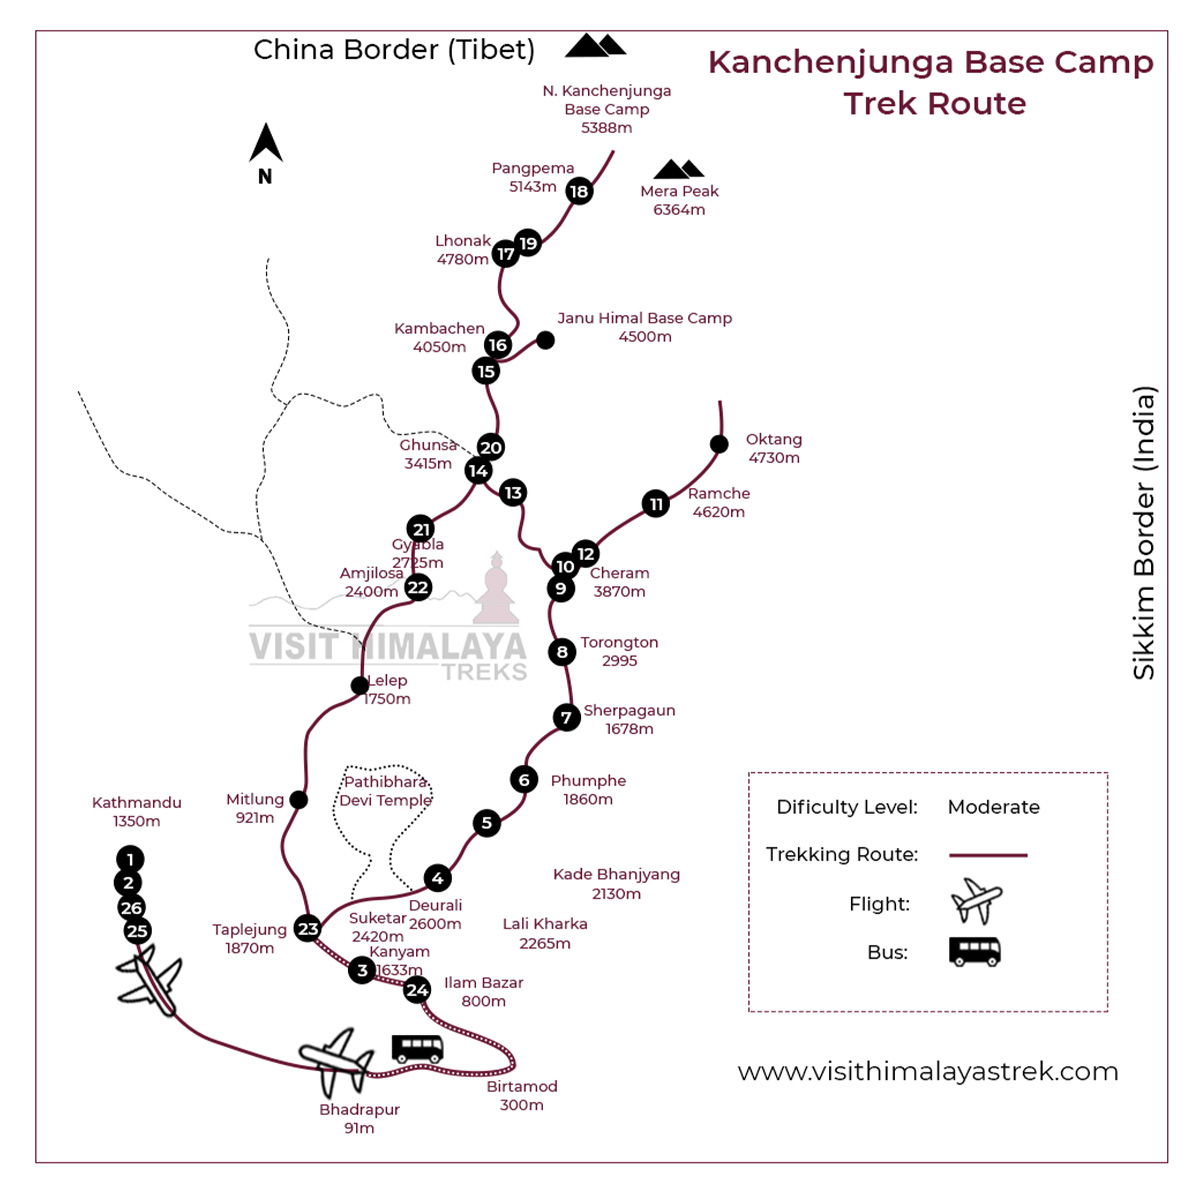 Kanchnjunga Base Camp Trek Route Map